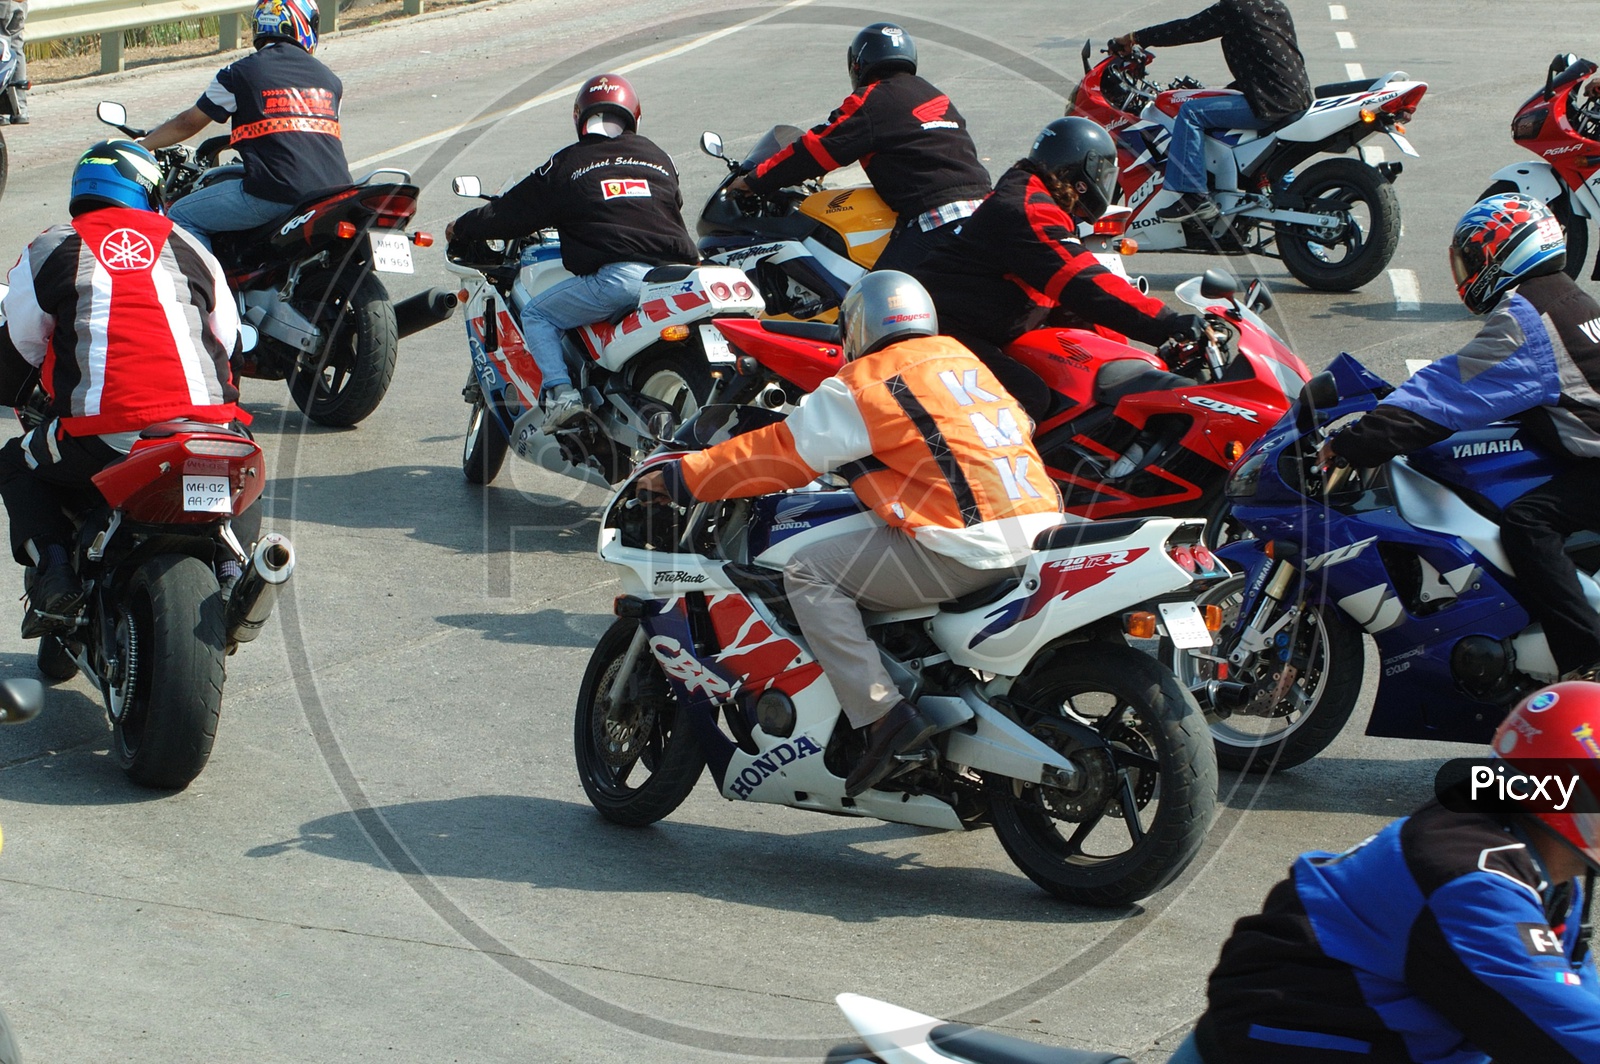 Motorcycle racing or motorbike racing